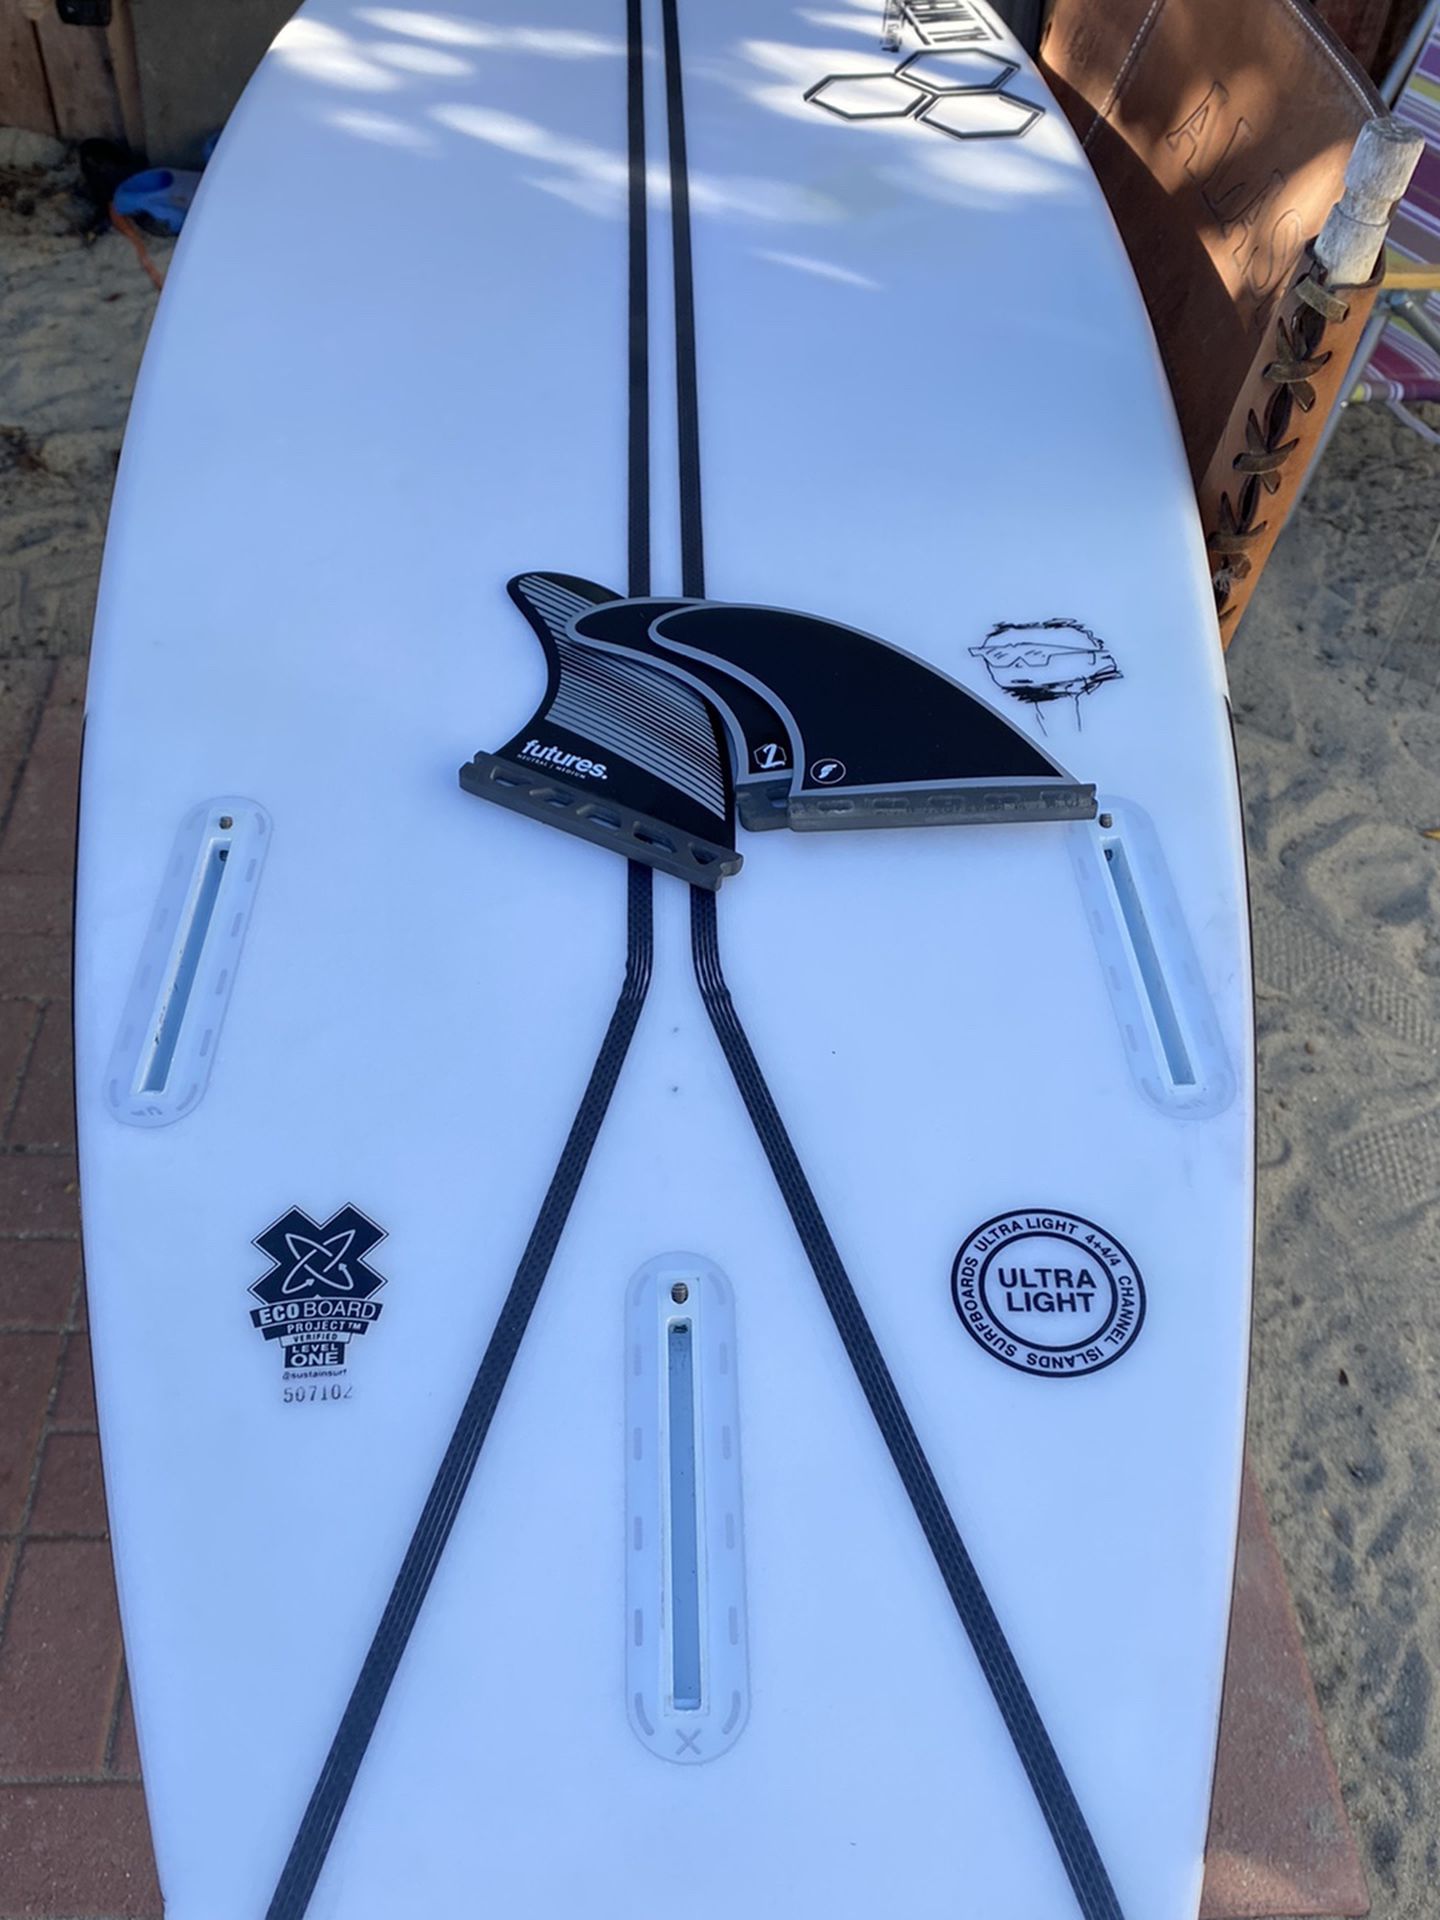 Channel Islands Neck beard 2 Surfboard